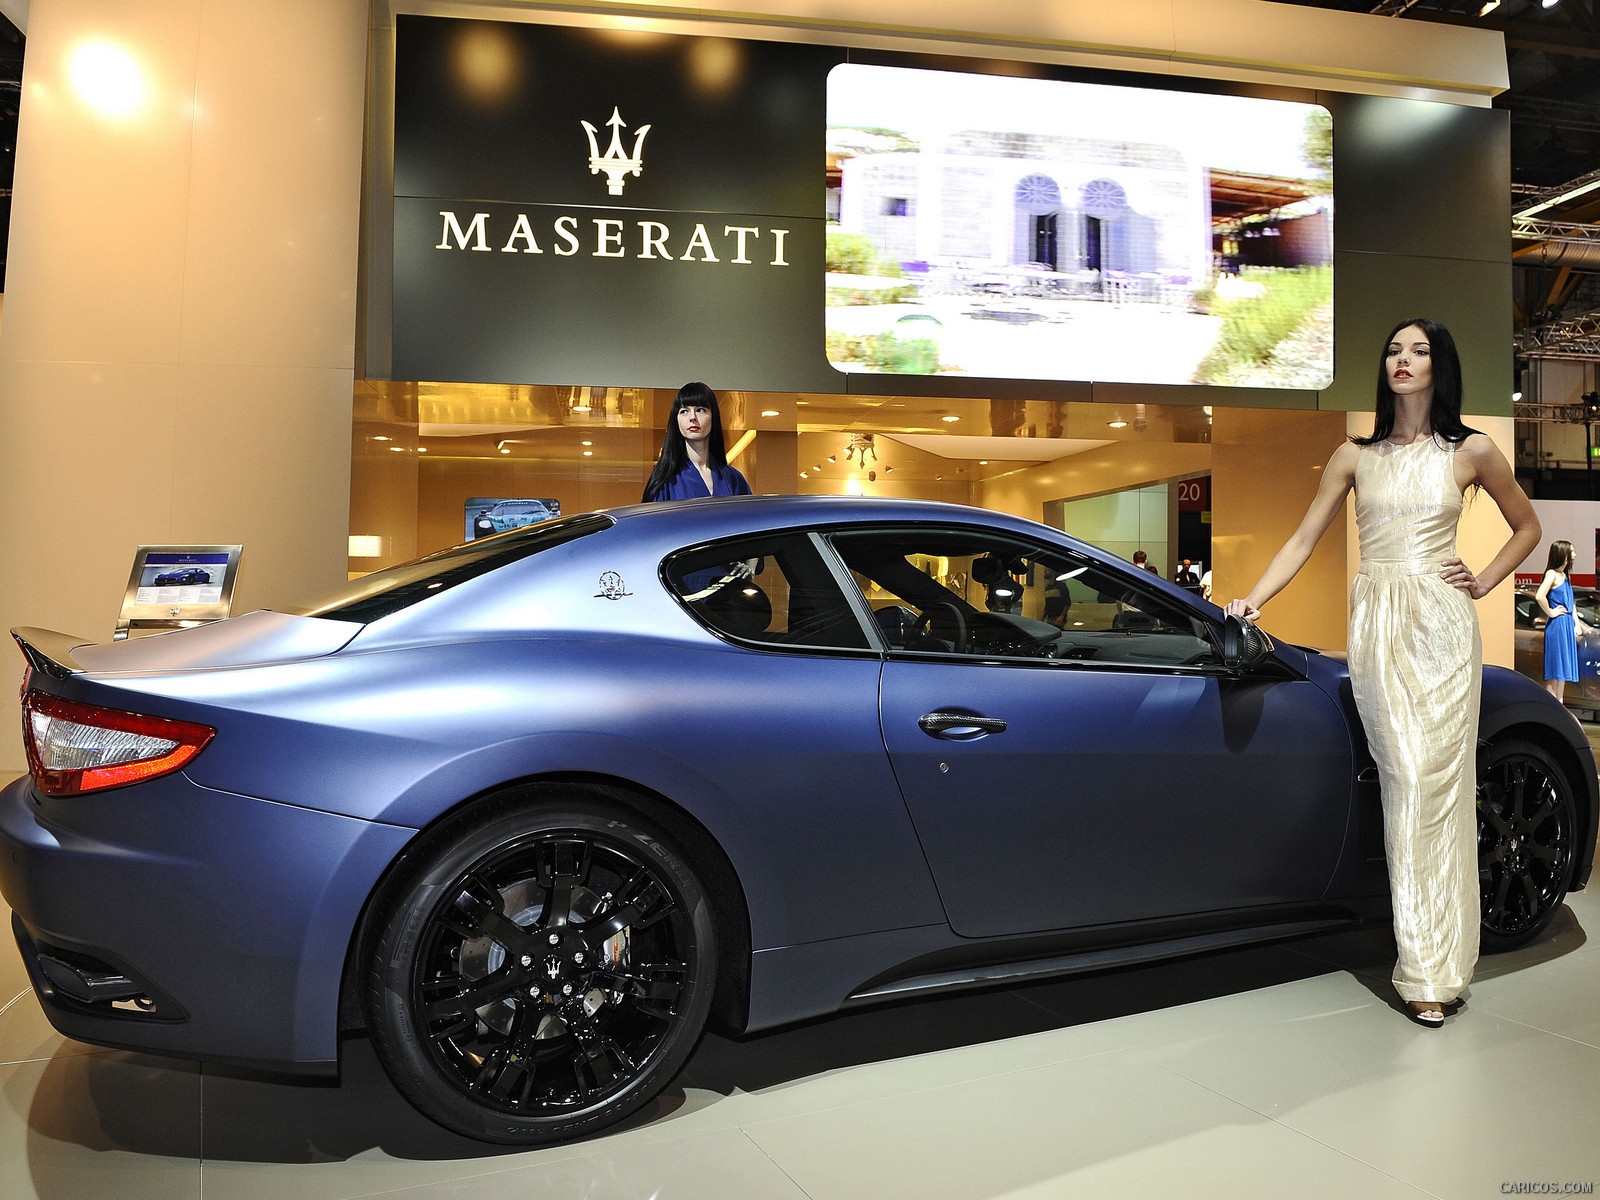 2012 Maserati GranTurismo S Limited Edition  - , #6 of 7